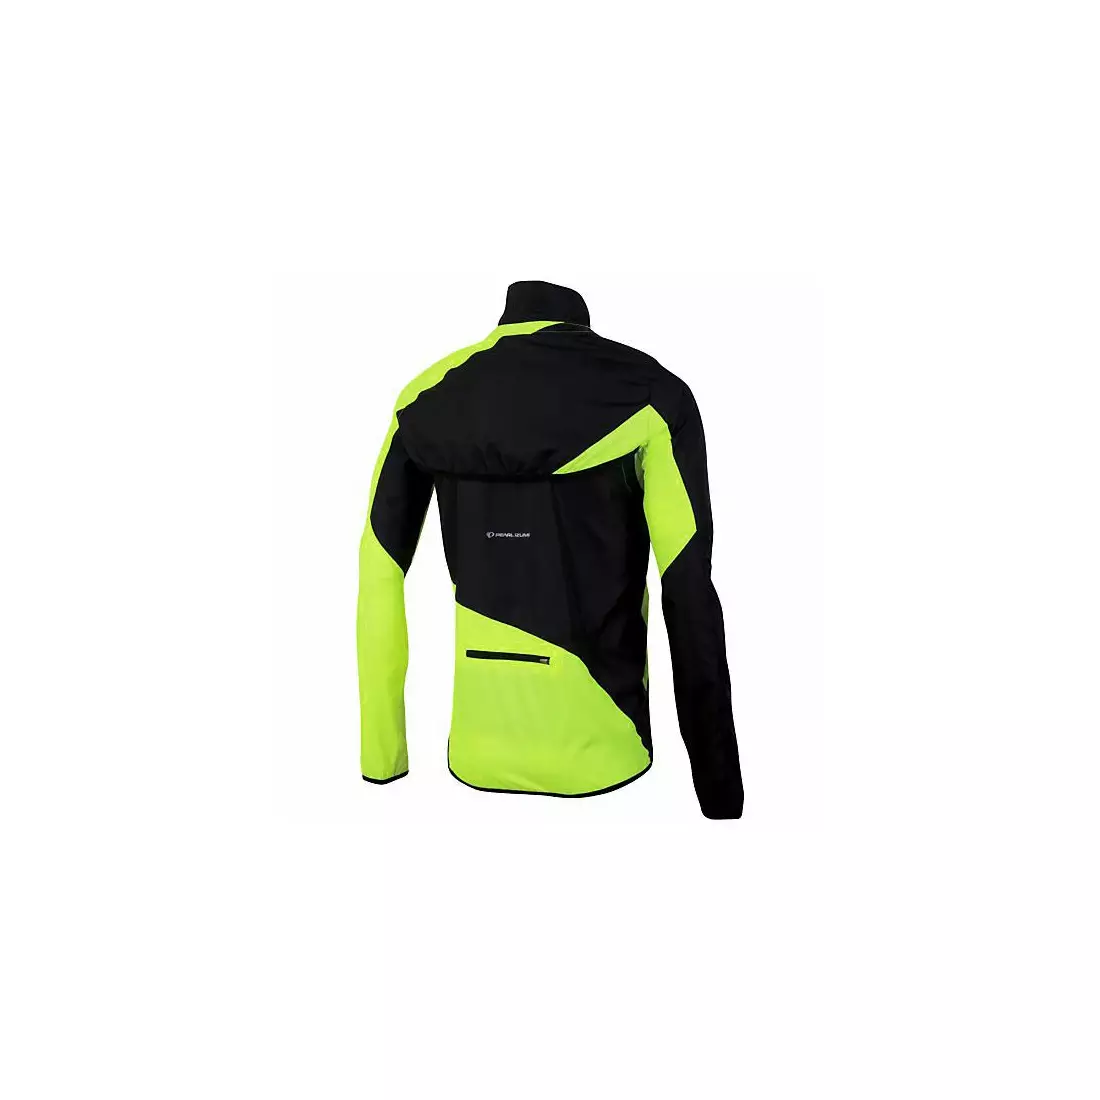 PEARL IZUMI RUN men's running jacket FLY CONV 12131403-429, color: black-fluorine